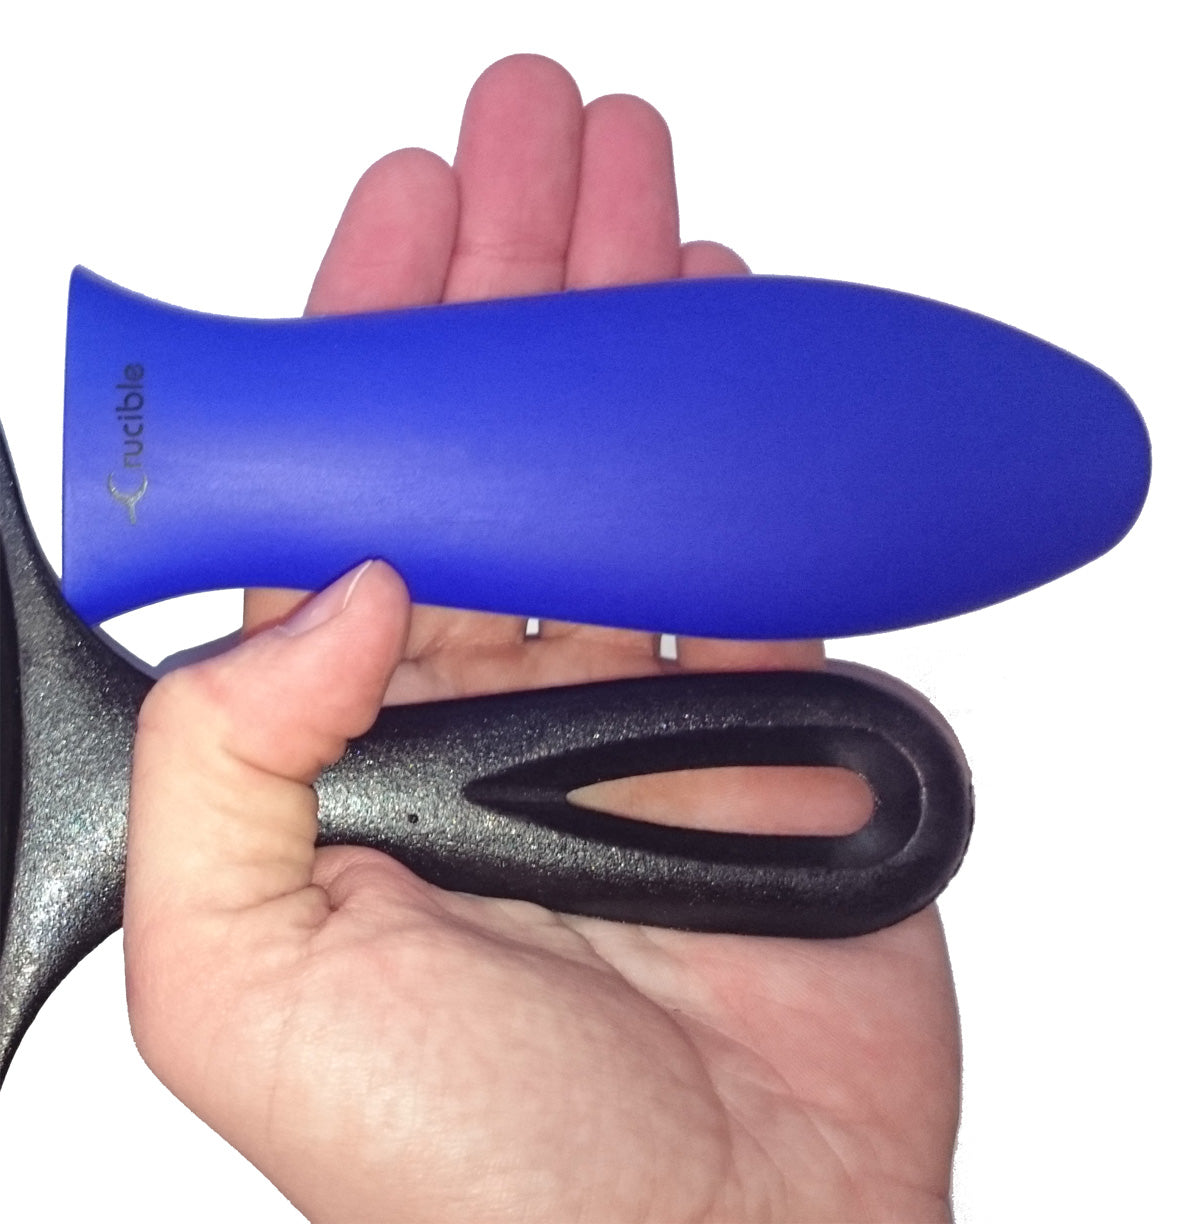 硅胶热手柄支架、隔热垫（蓝色大号）、套筒握把、手柄盖